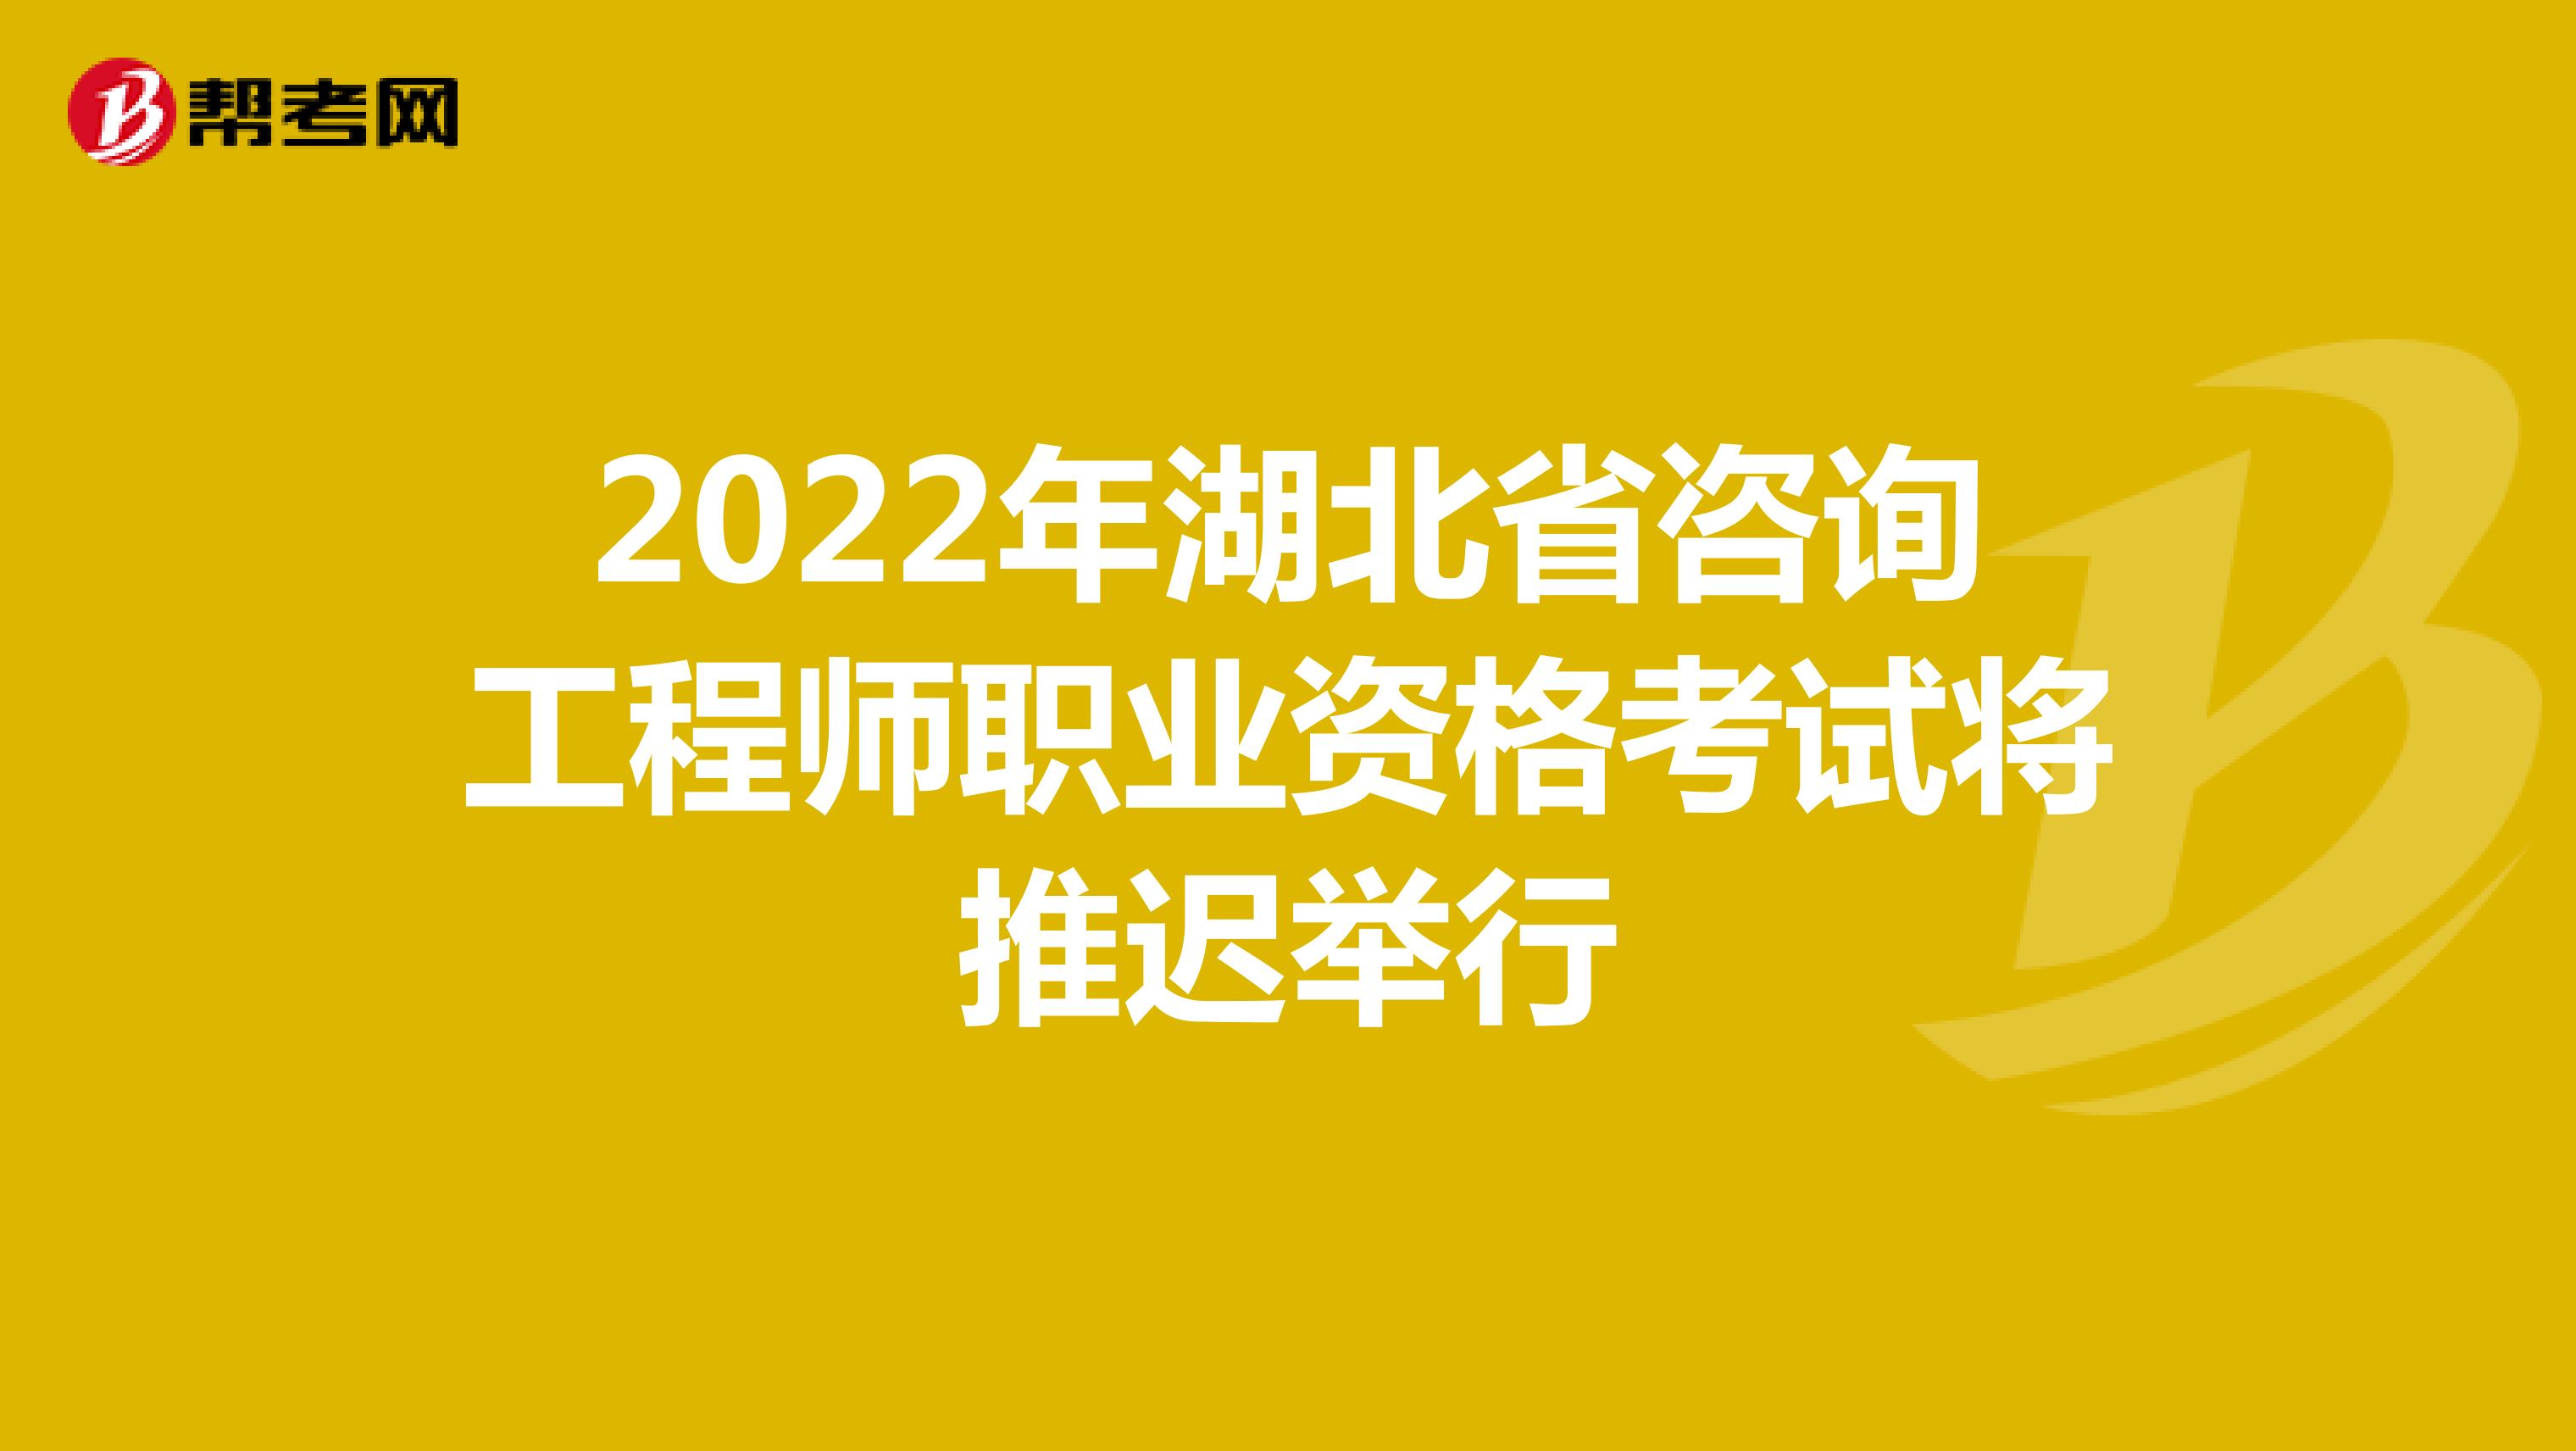 2022年湖北省咨询工程师职业资格考试将推迟举行